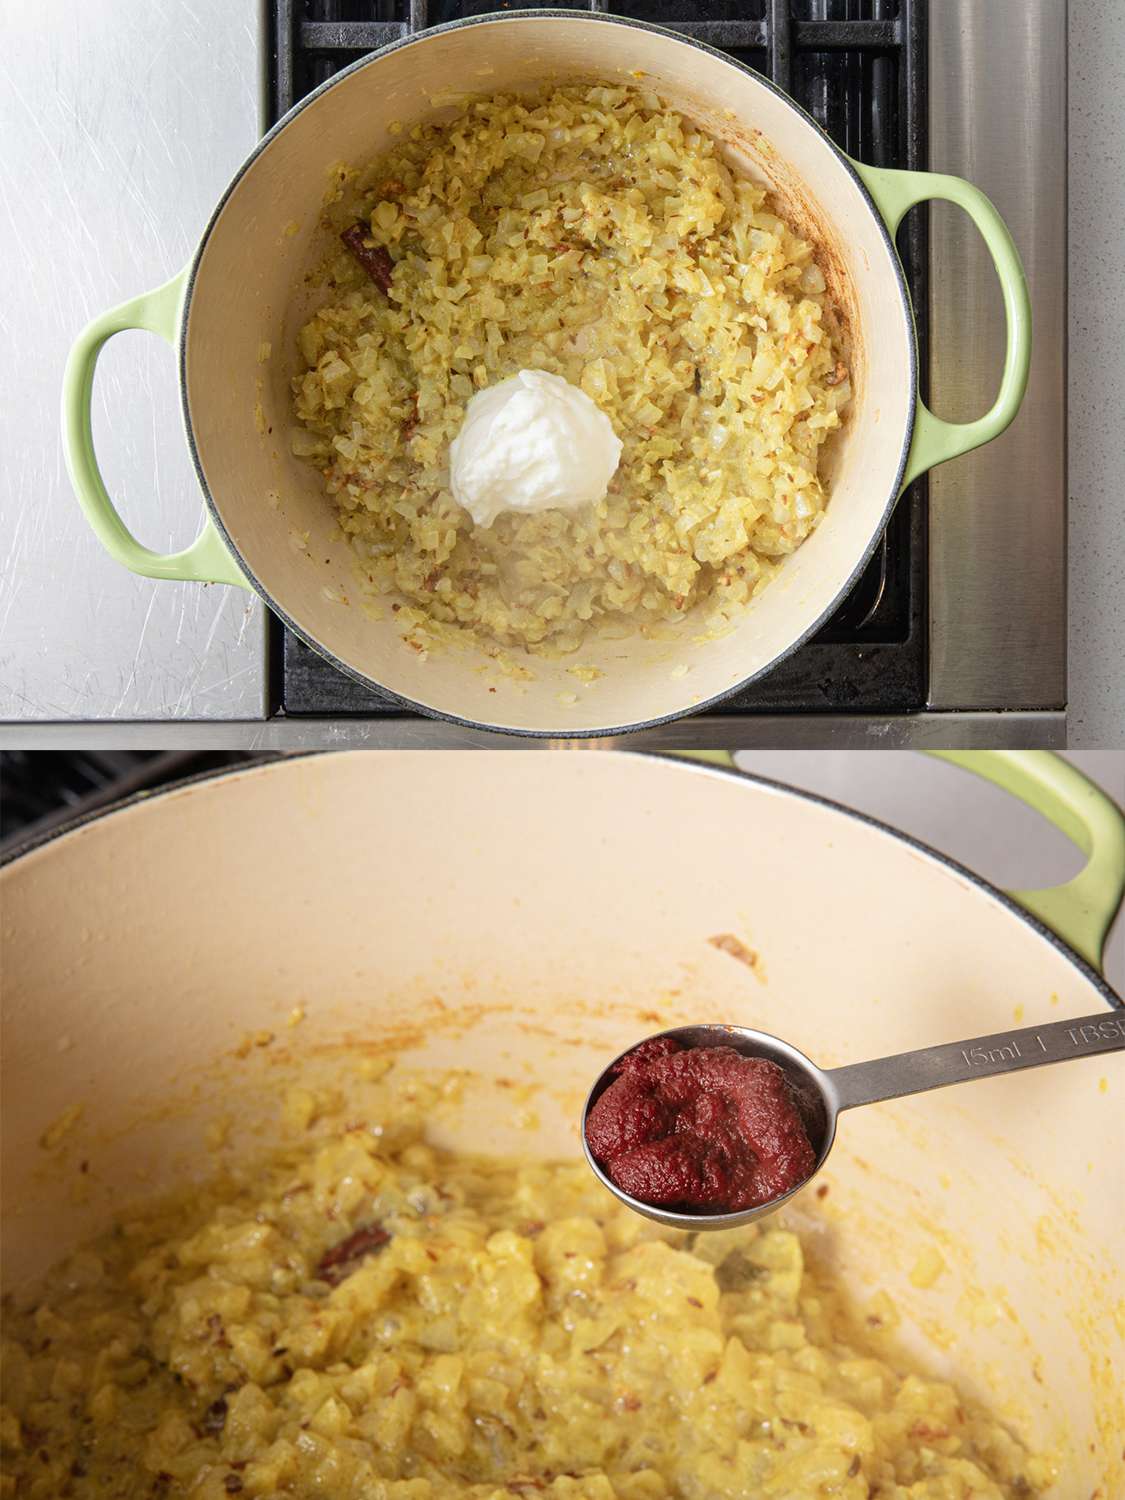 两幅图像拼贴。上图:荷兰烤箱中酸奶的俯视图。下图:即将加入的番茄酱的侧角图。